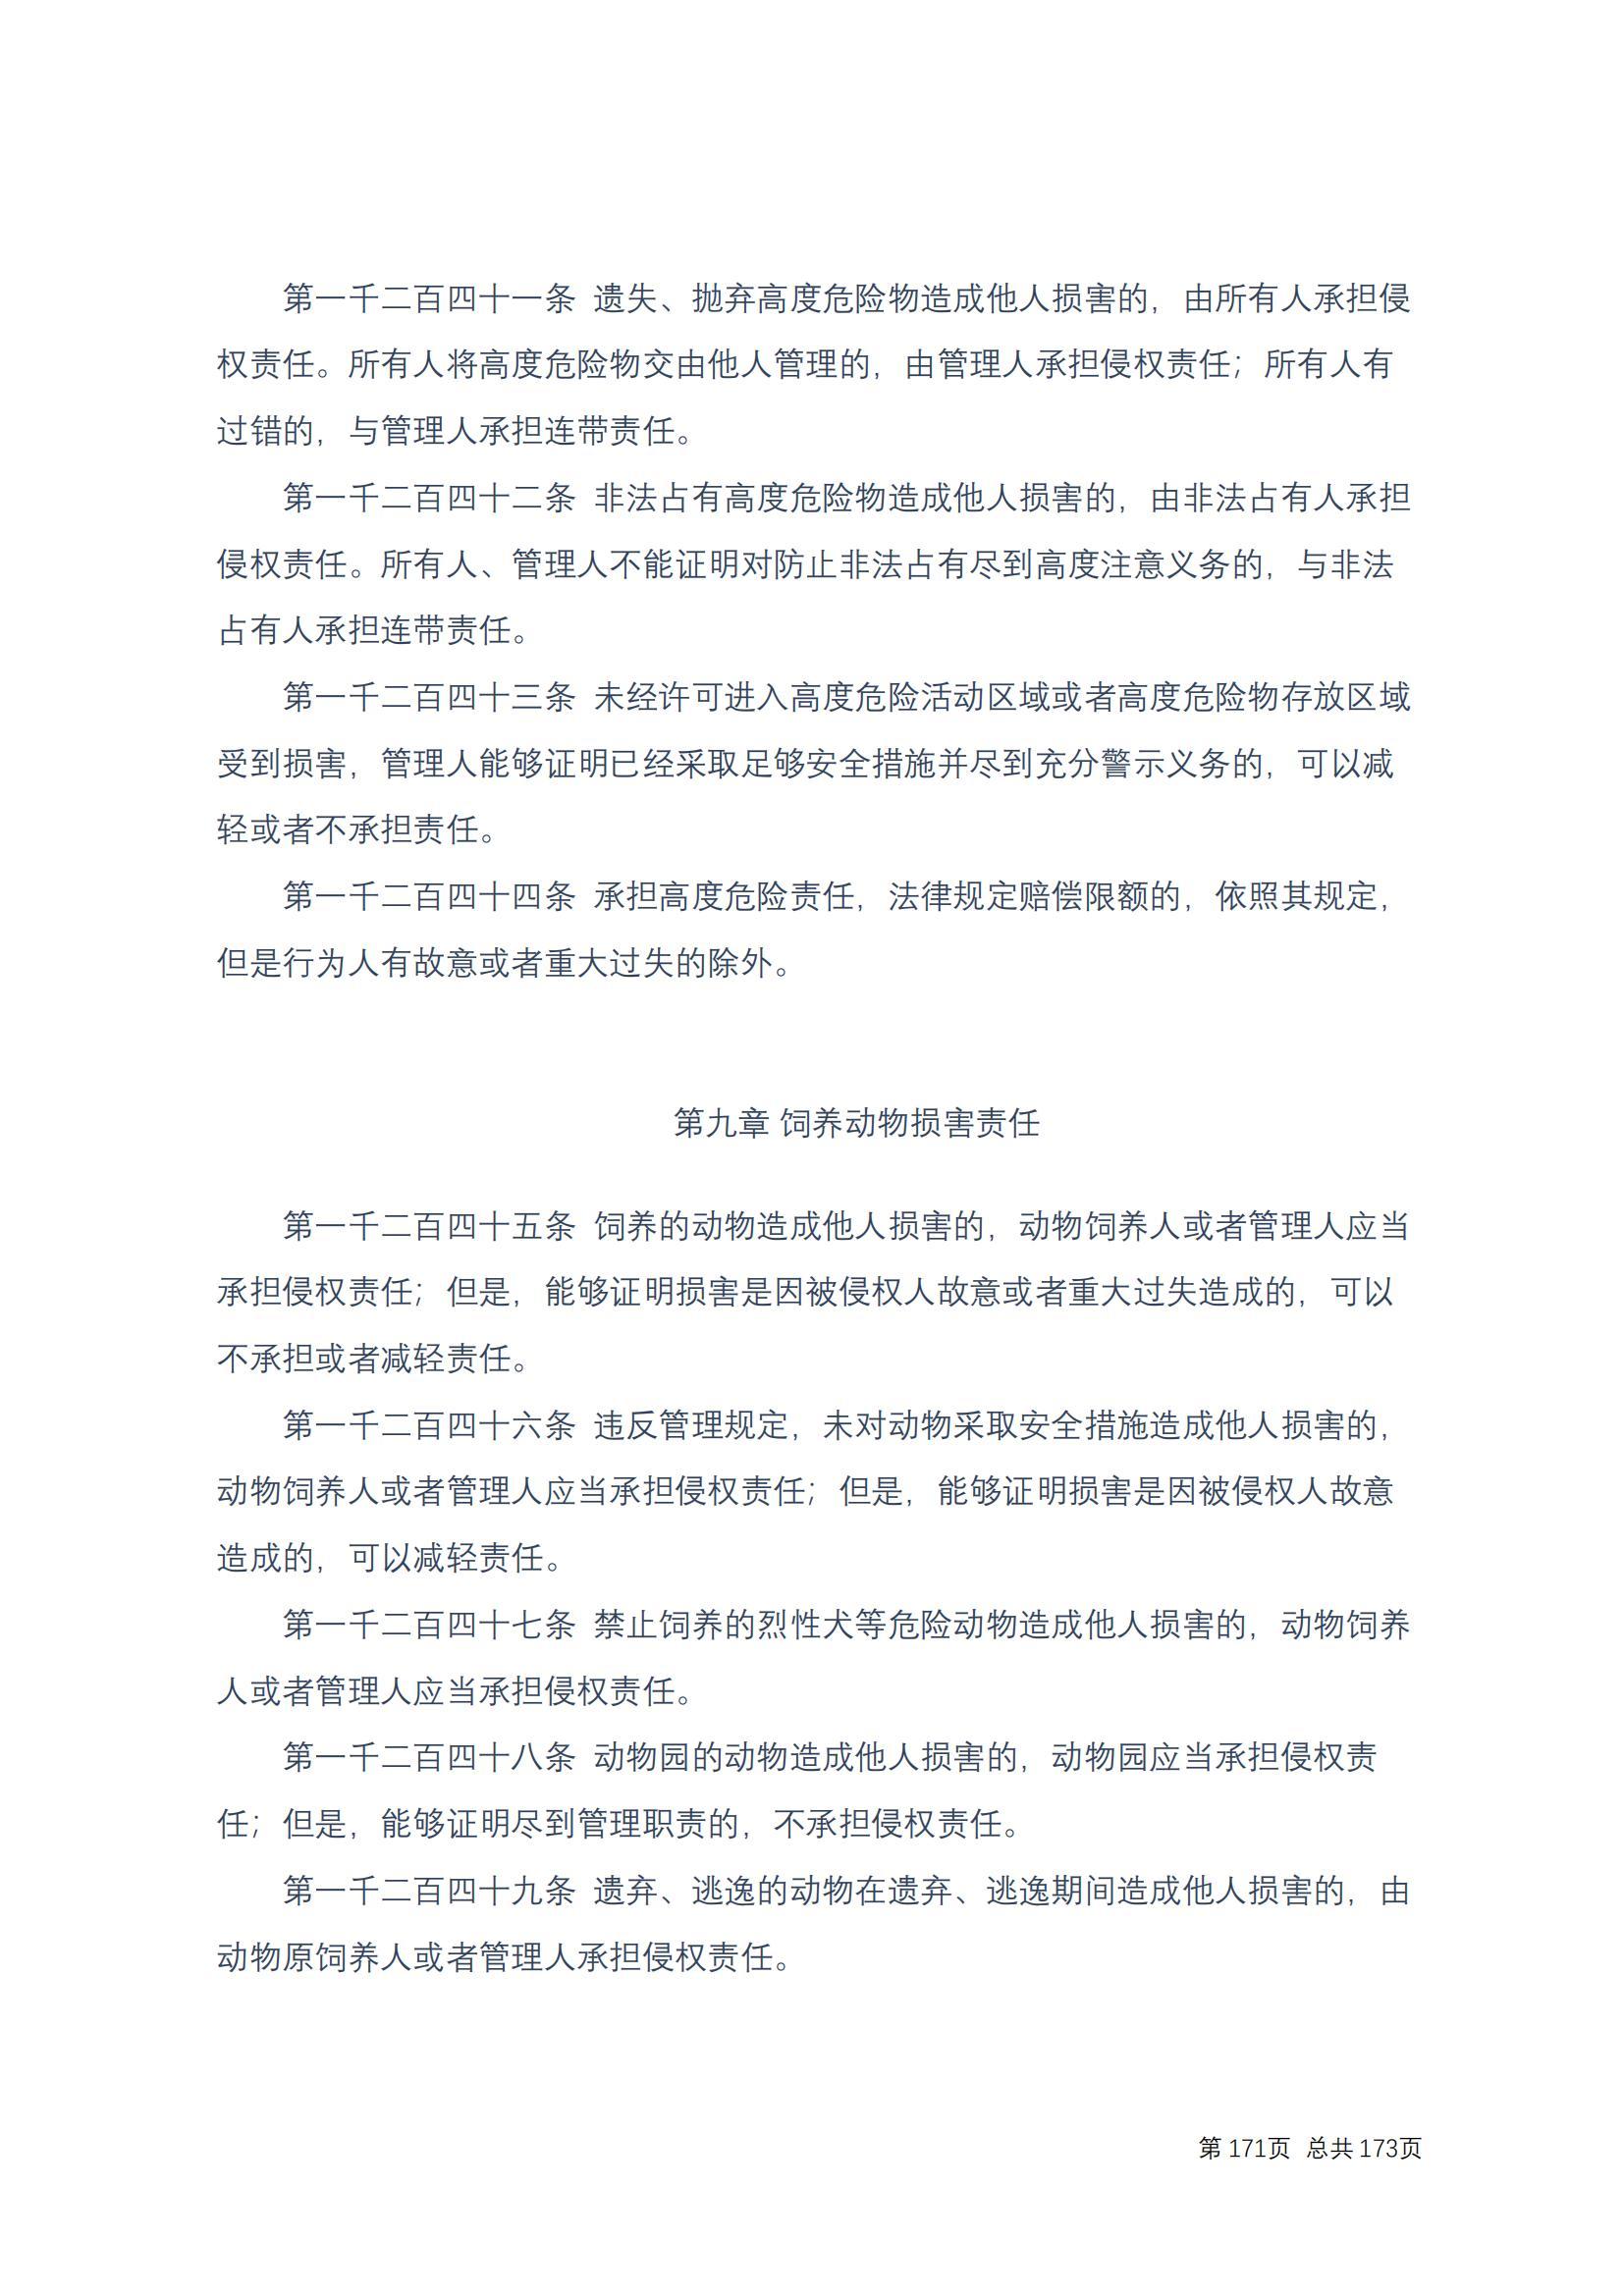 中华人民共和国民法典 修改过_170